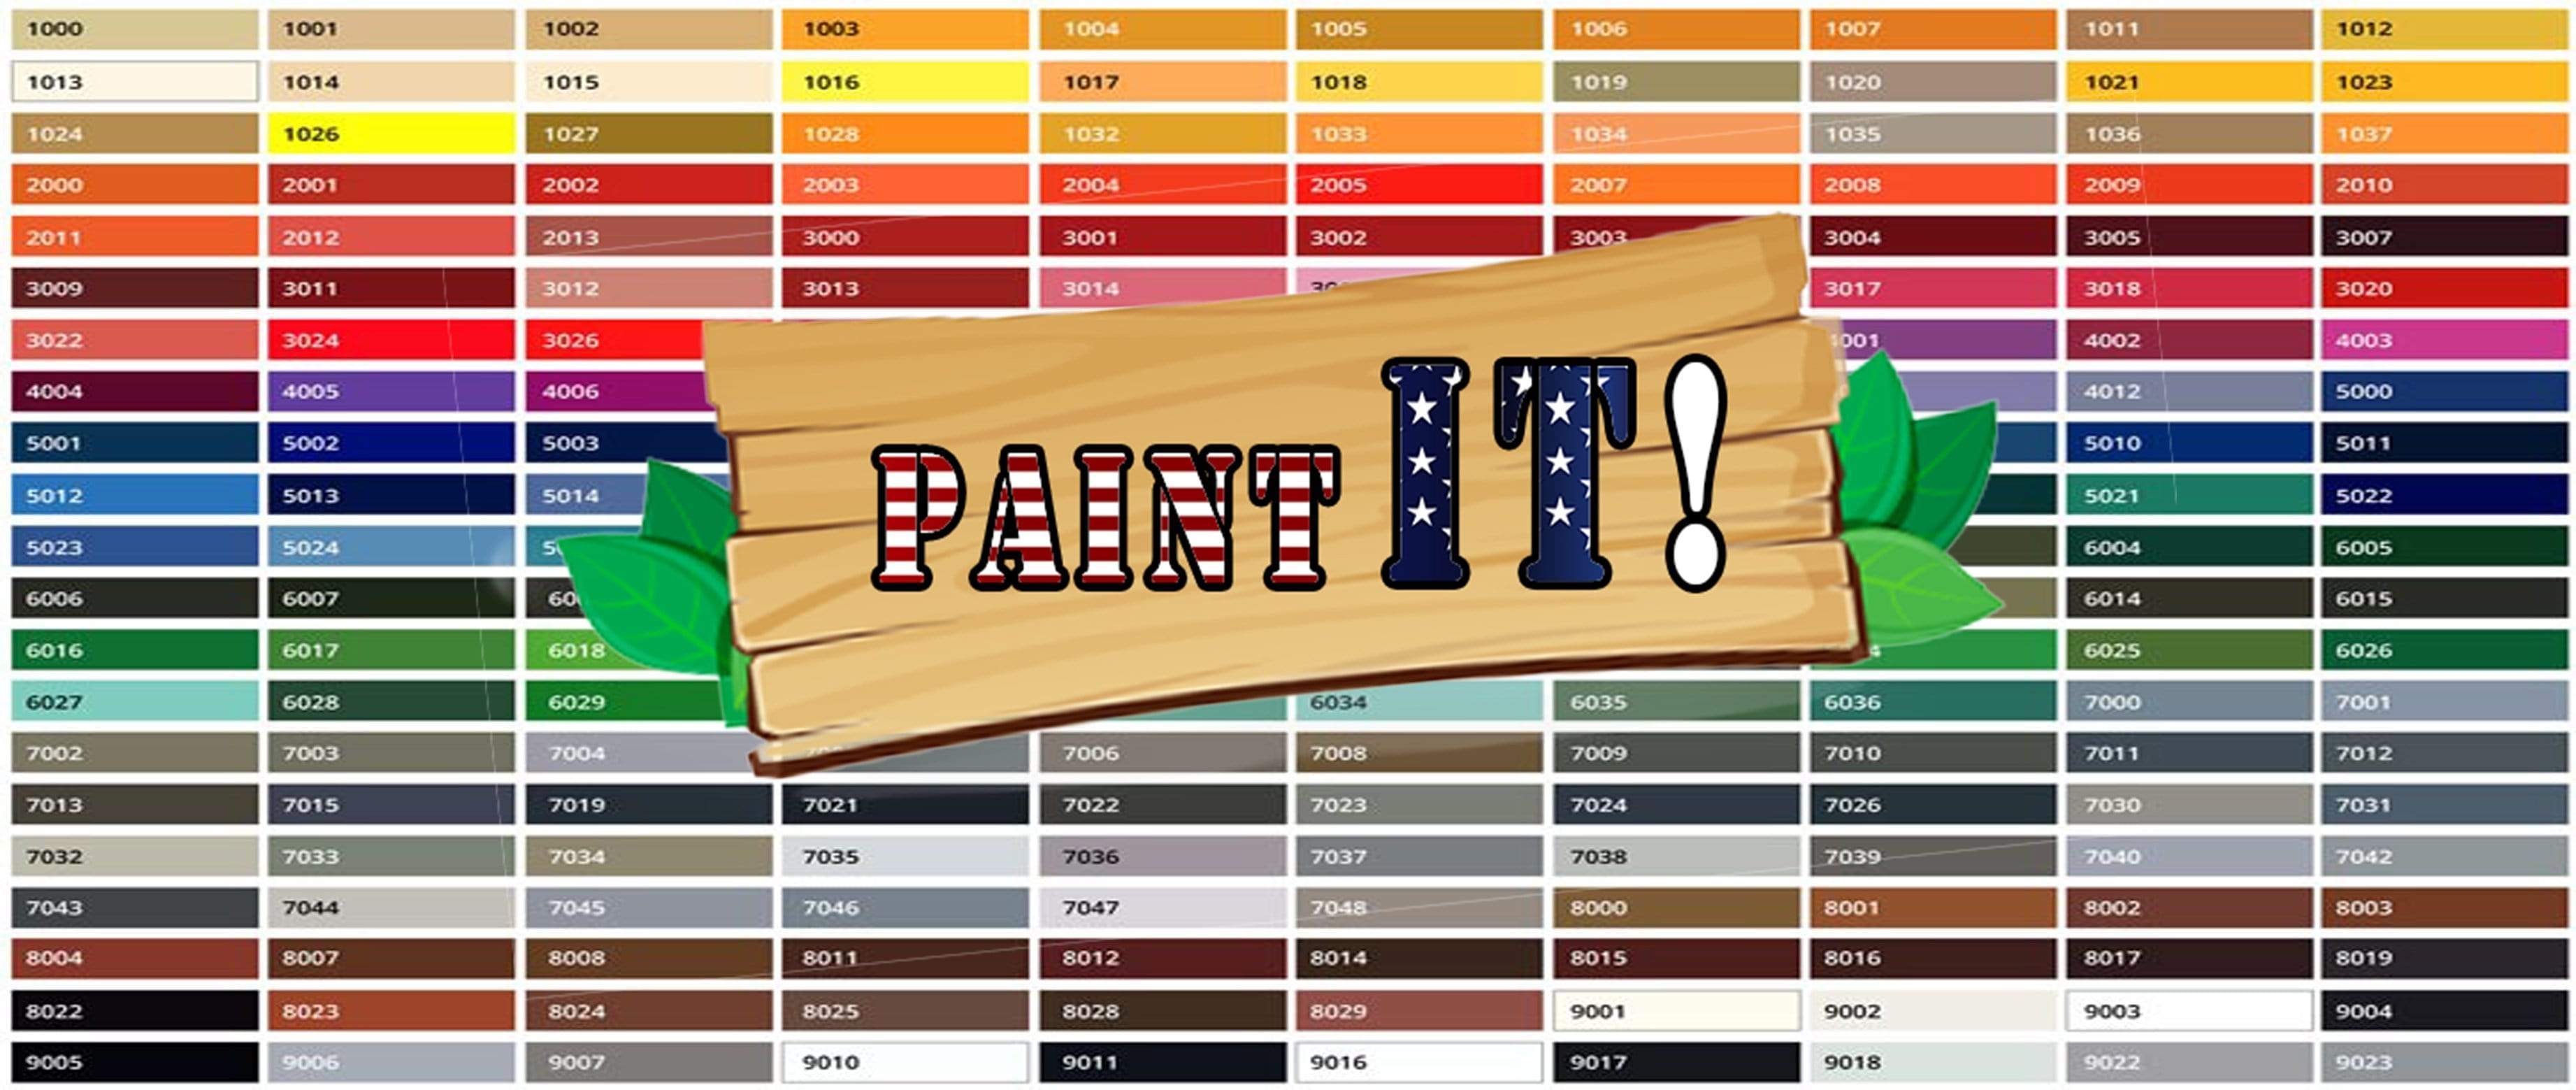 Paint IT! Fliesenlack / Fliesenfarbe - Alternative zum Küchenschild / Küchenspiegel - FARBENLÖWE